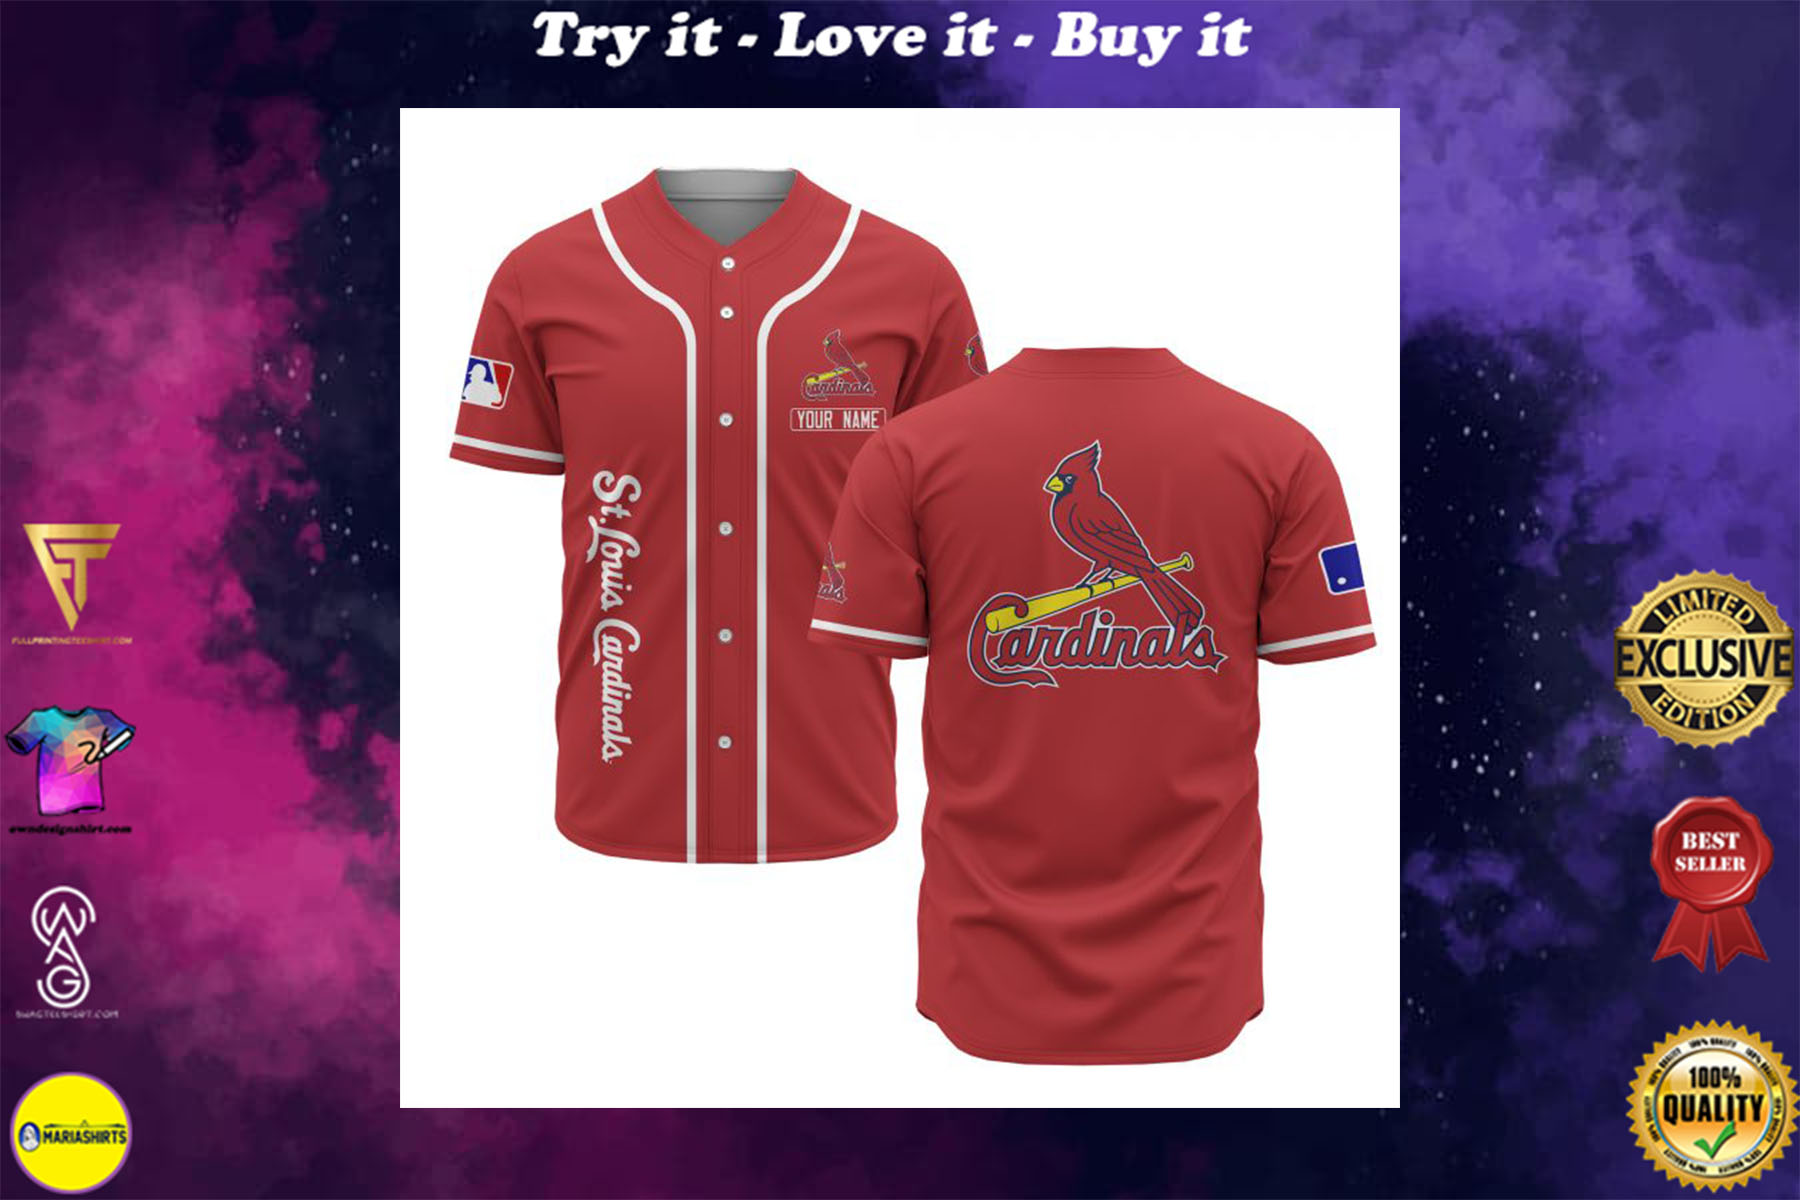 custom cardinals shirt